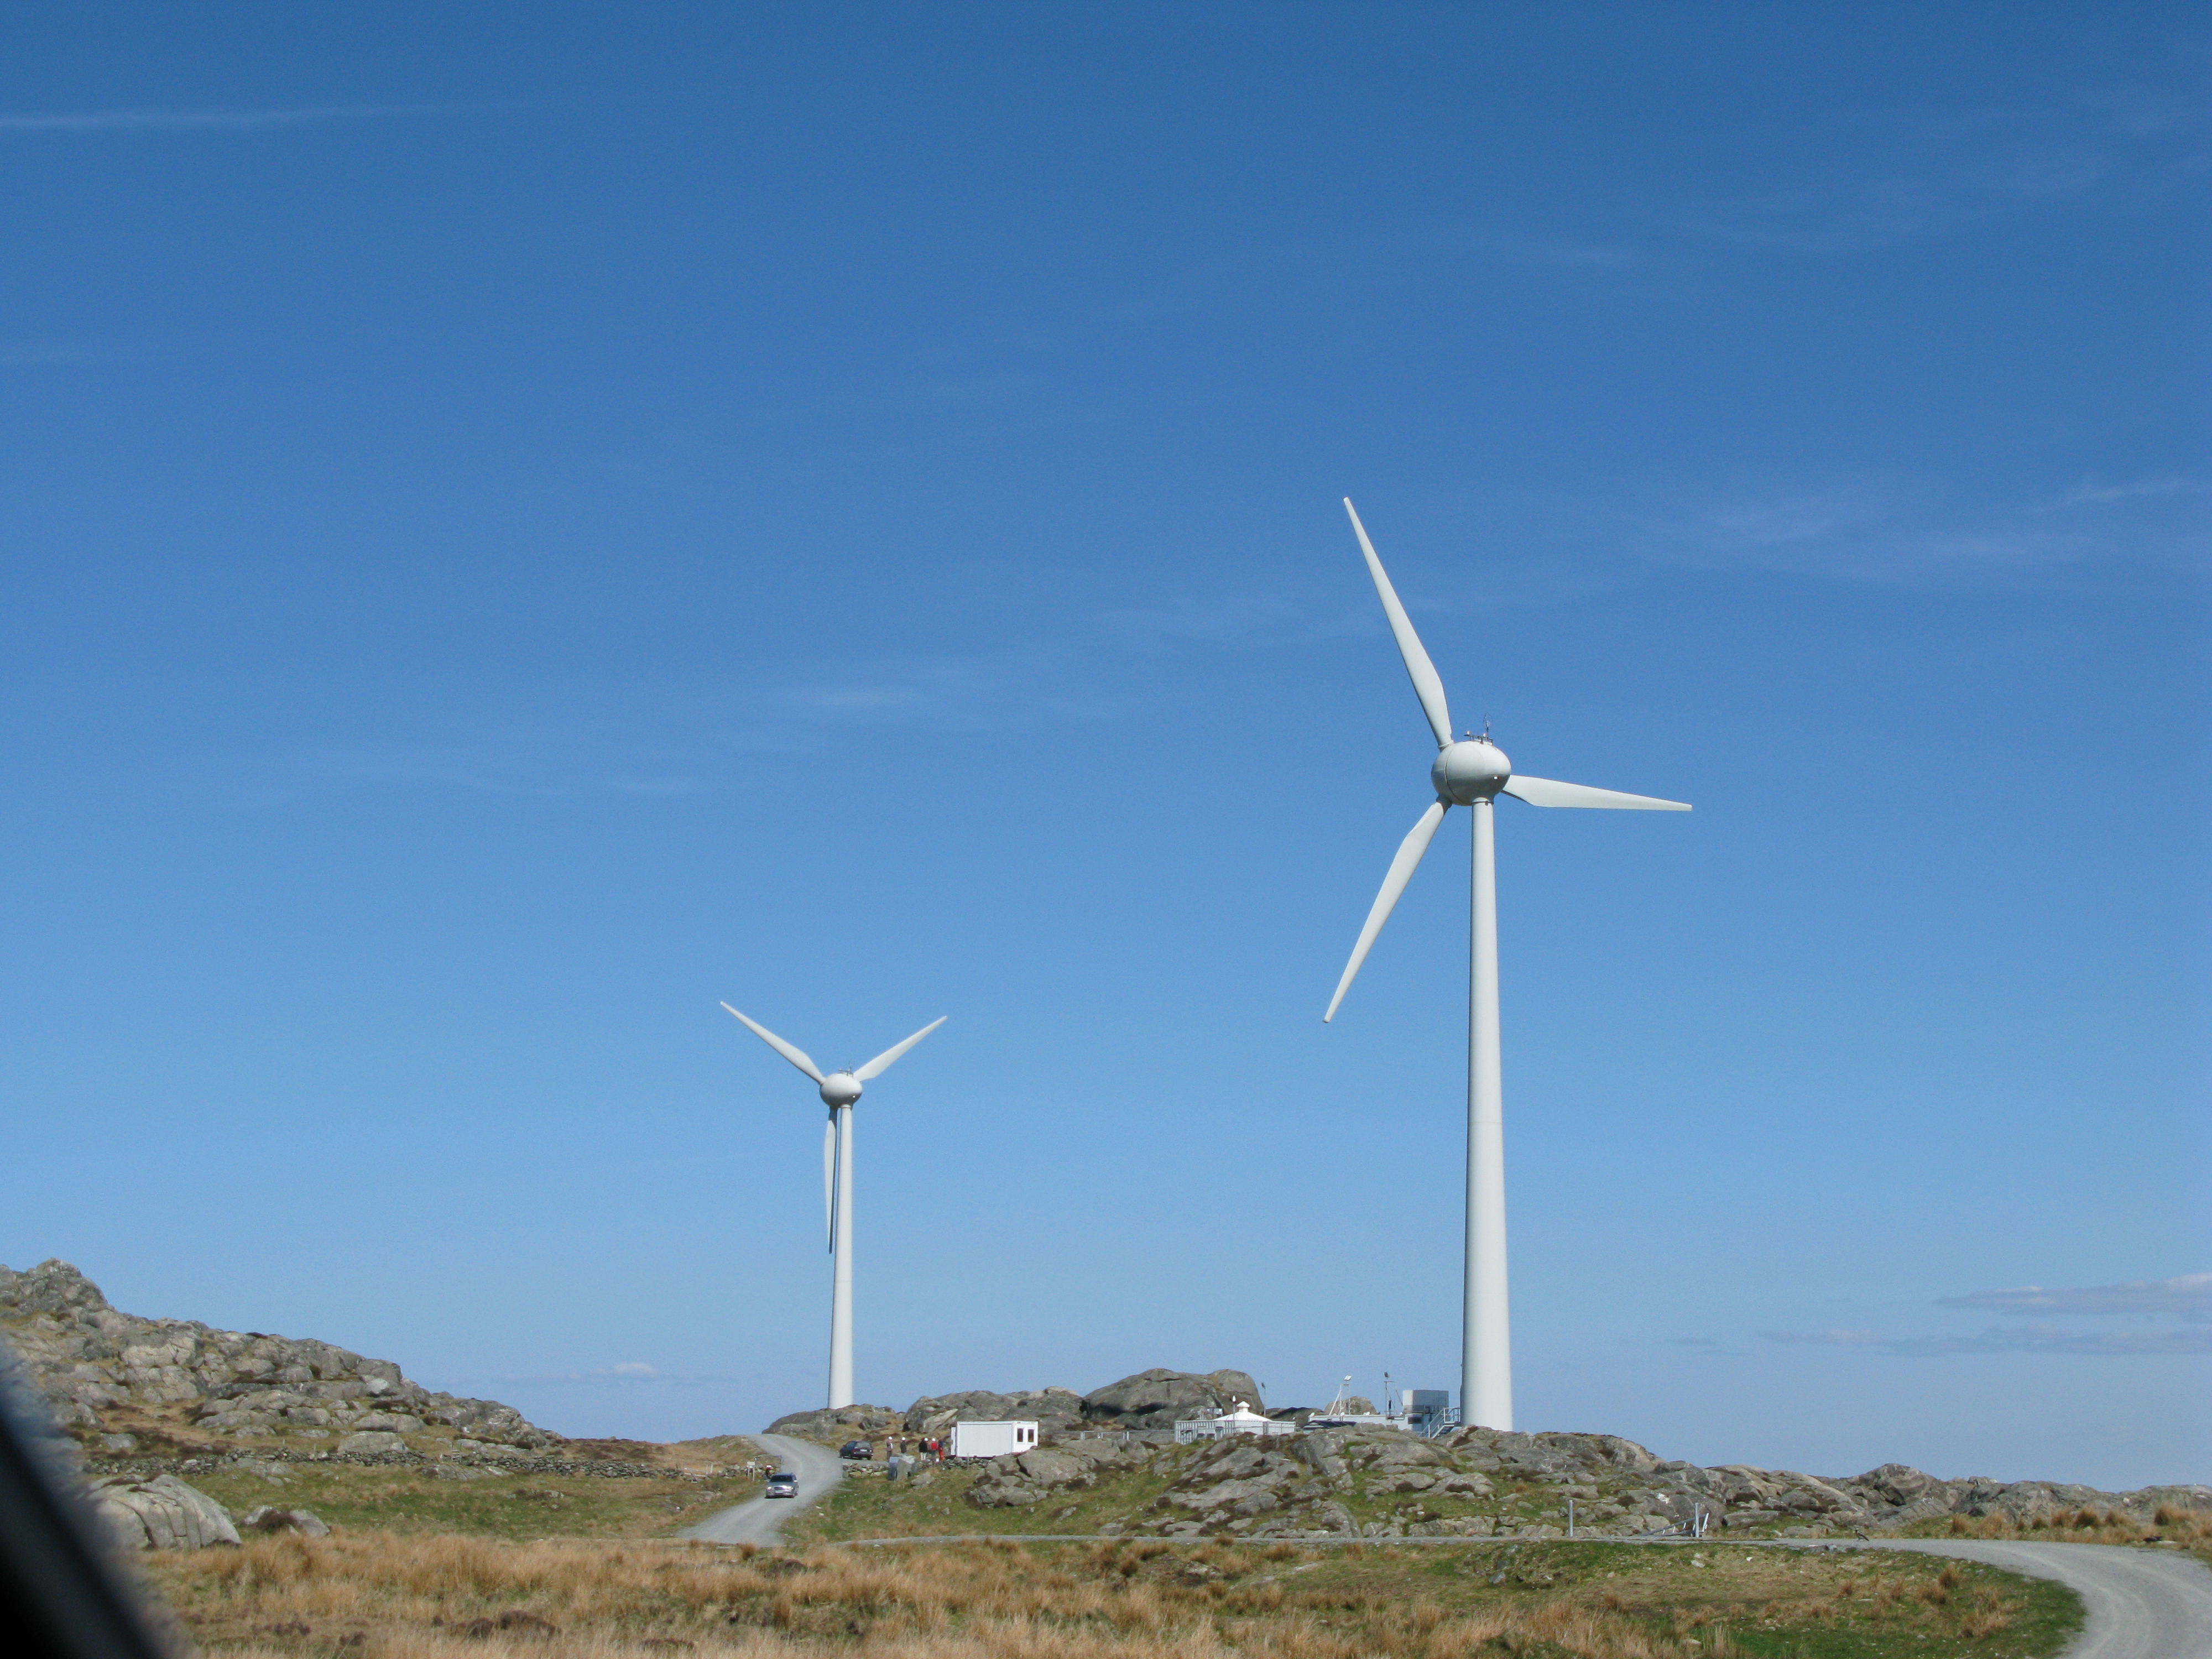 Két 40 méteres szélturbina a norvégiai Utsira délnyugati szigetén 2018-ban. A turbinák az apró délnyugat-norvégiai Utsira szigeten zajló projekt részét képezik, aminek a célja, hogy a felesleges szélenergiát könnyen tárolható hidrogénné alakítsák át.